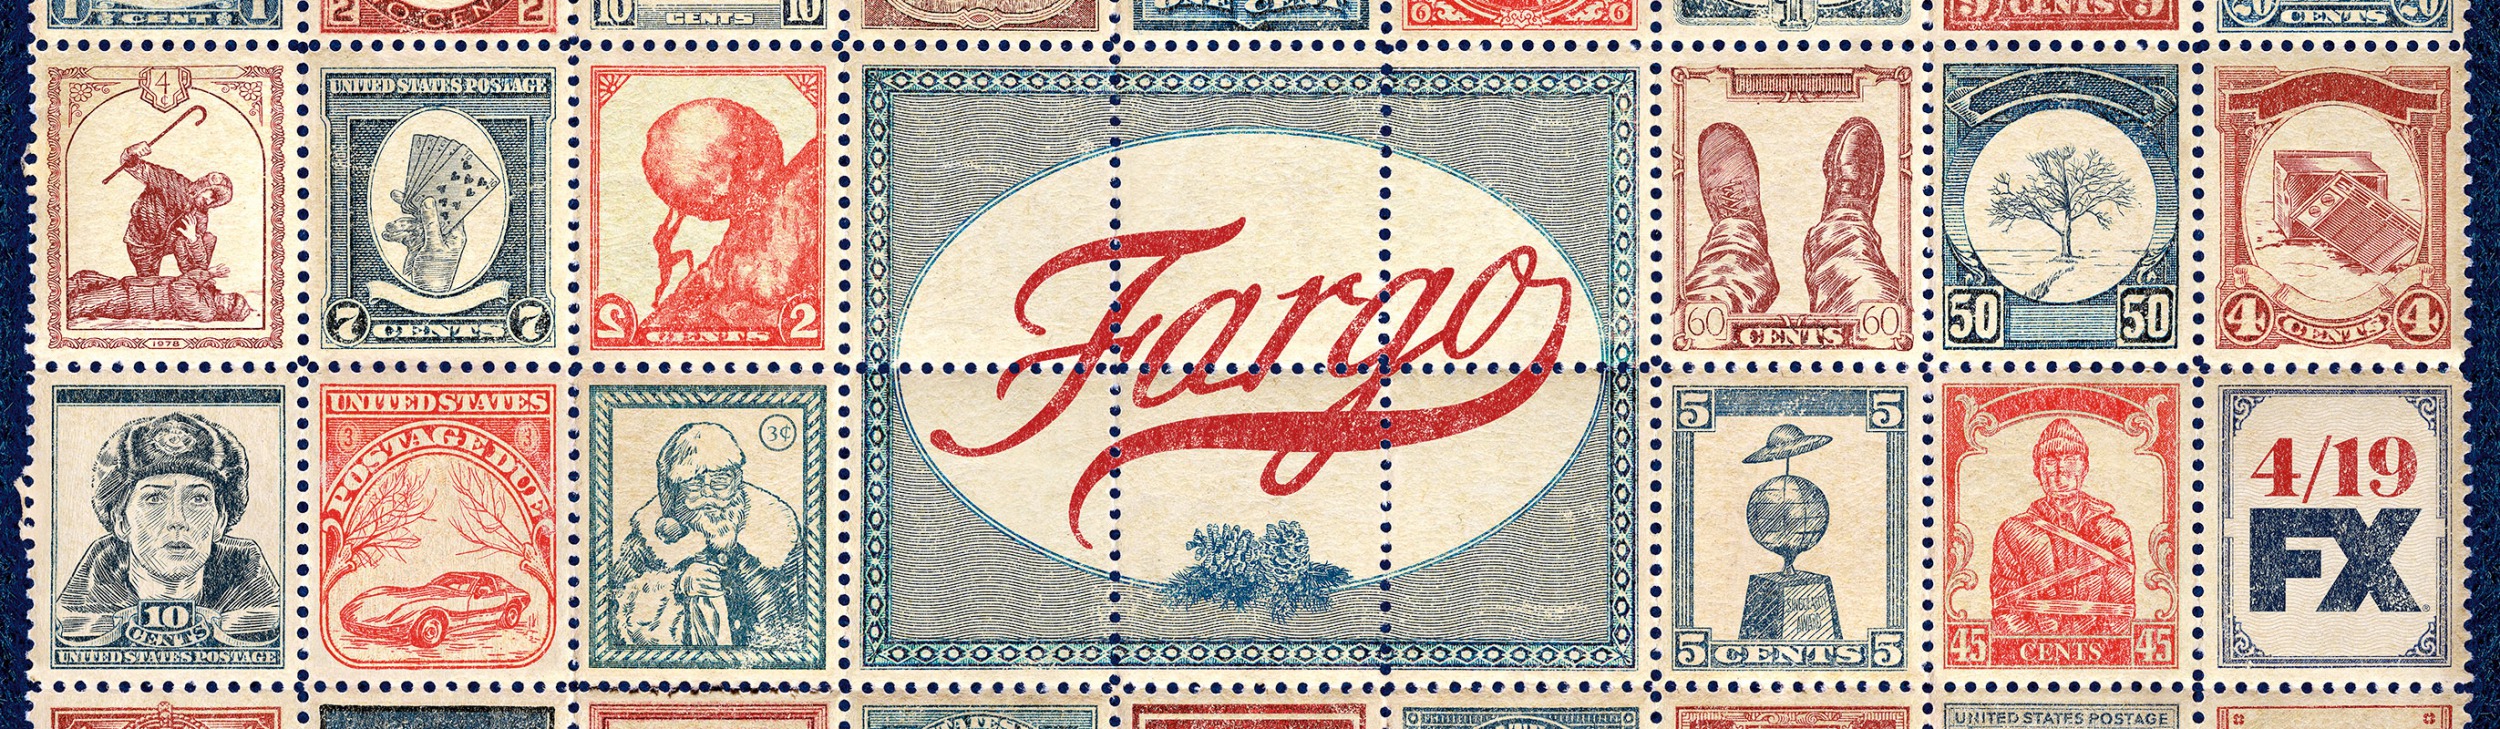 Mega Sized TV Poster Image for Fargo (#7 of 11)